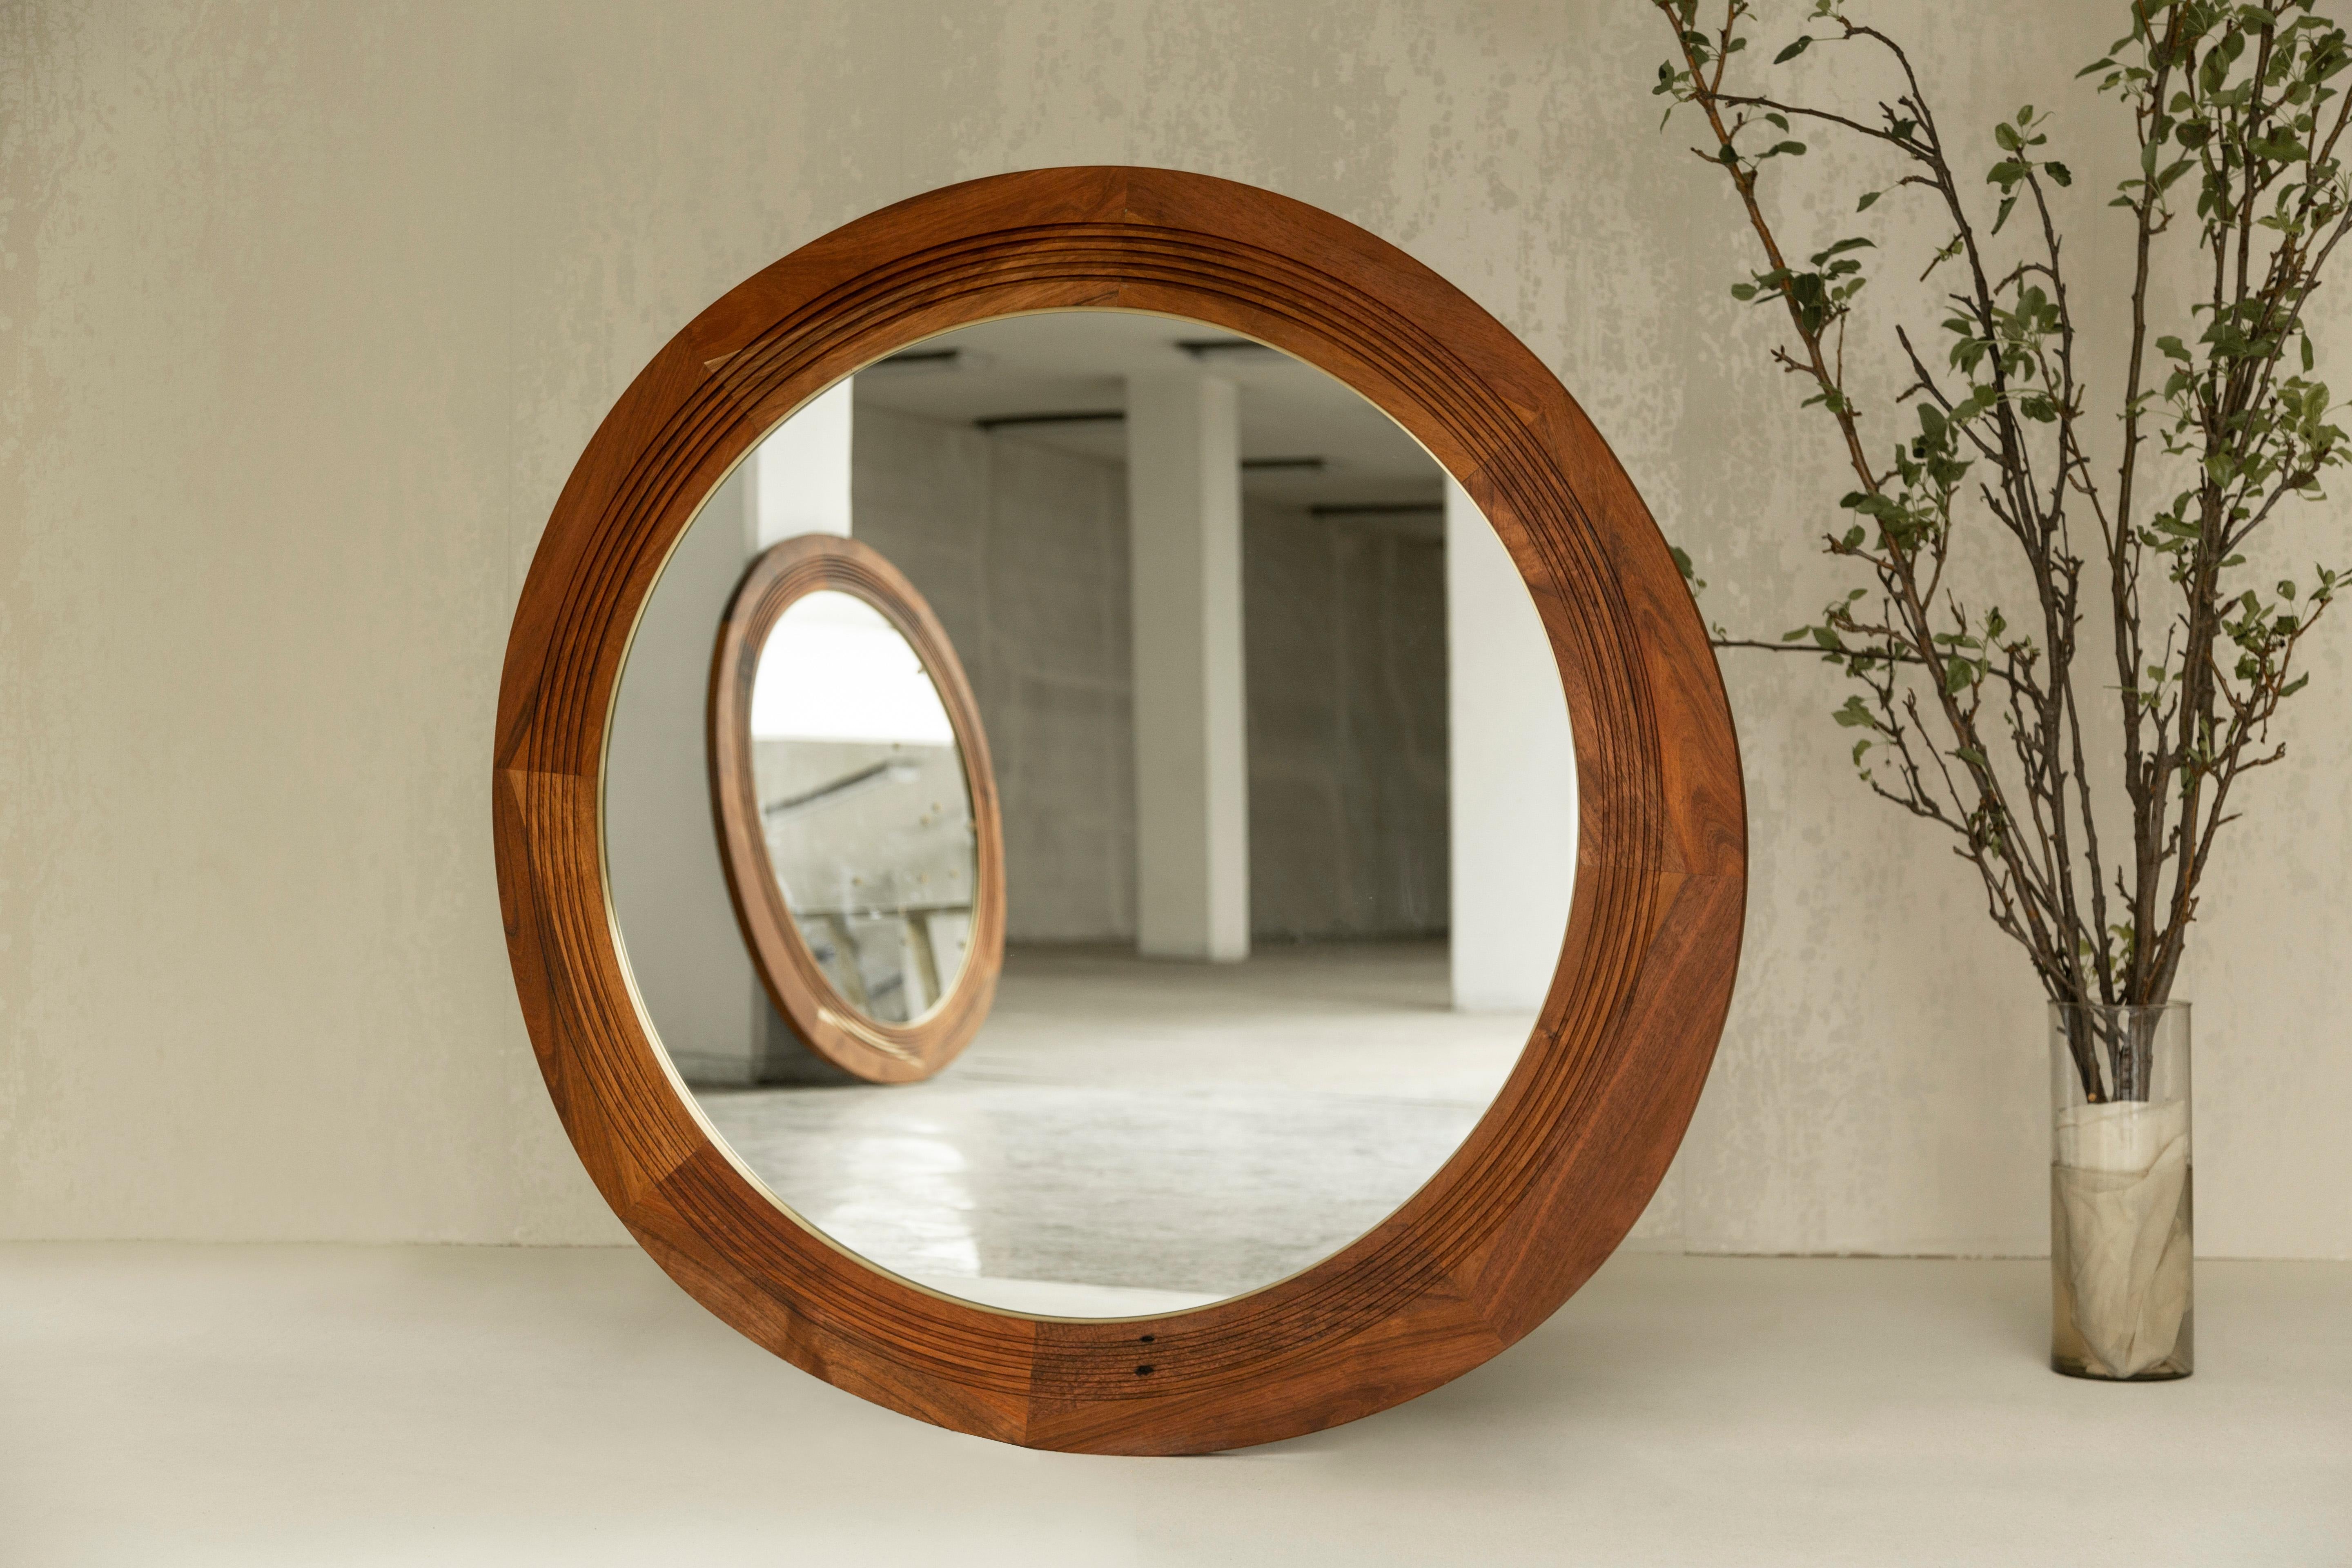 Der Joseph-Spiegel ist mit Messingdetails und schönen, in das Holz geschnitzten Mustern versehen. Die unregelmäßige Form bildet einen interessanten Kontrast zum inneren Kreis. Dieser Spiegel wurde nach Joseph Campbell benannt und bezieht sich auf